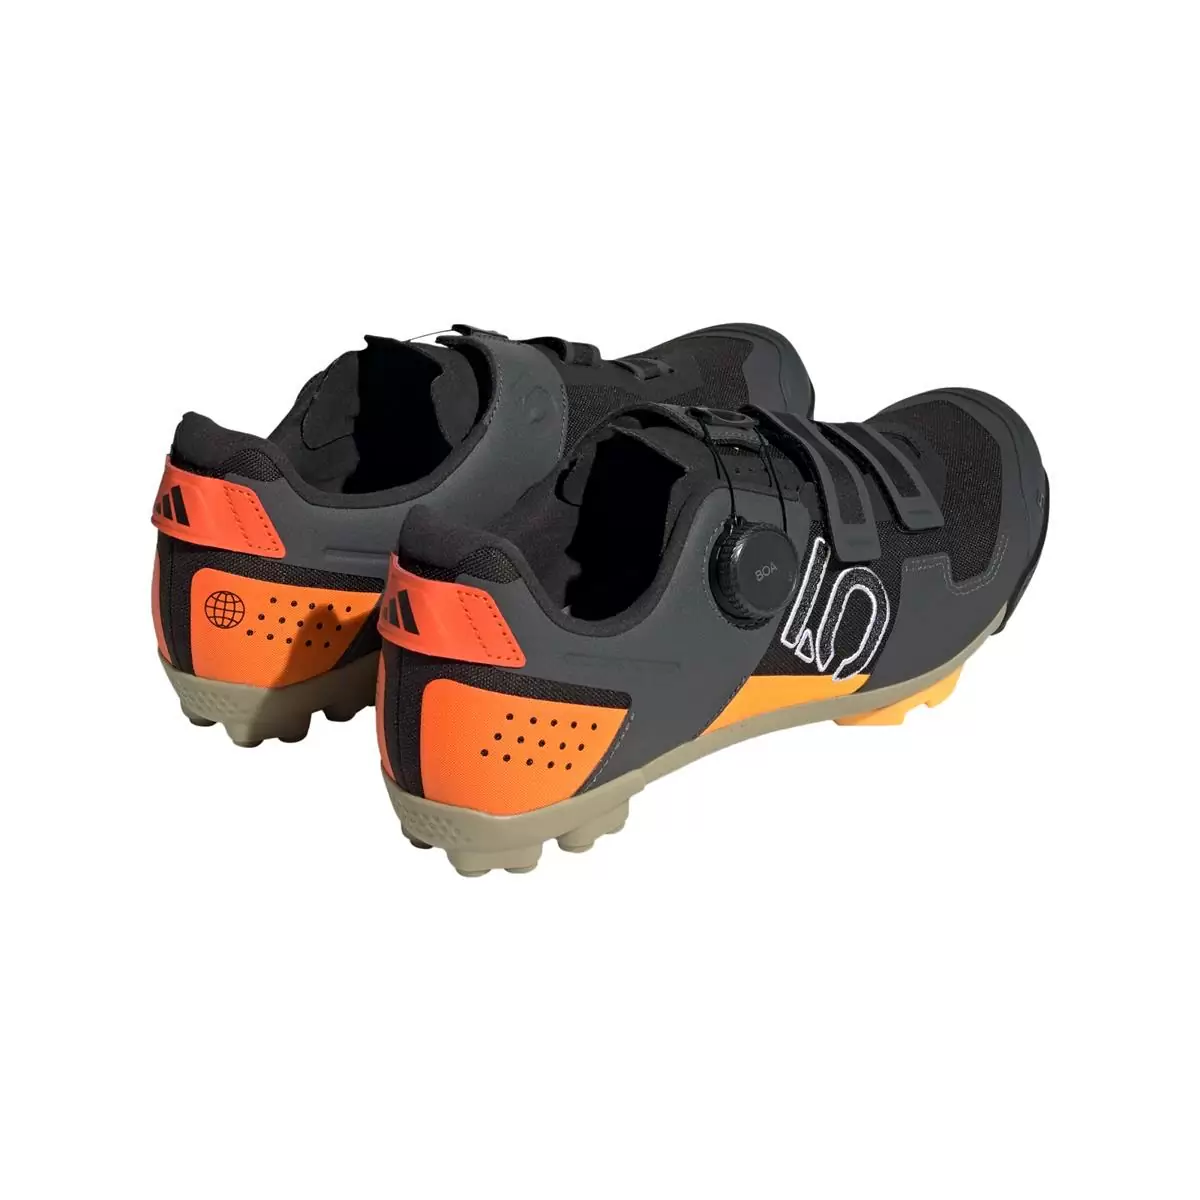 Clip 5.10 Kestrel Boa MTB Shoes Black/Orange Size 44.5 #4